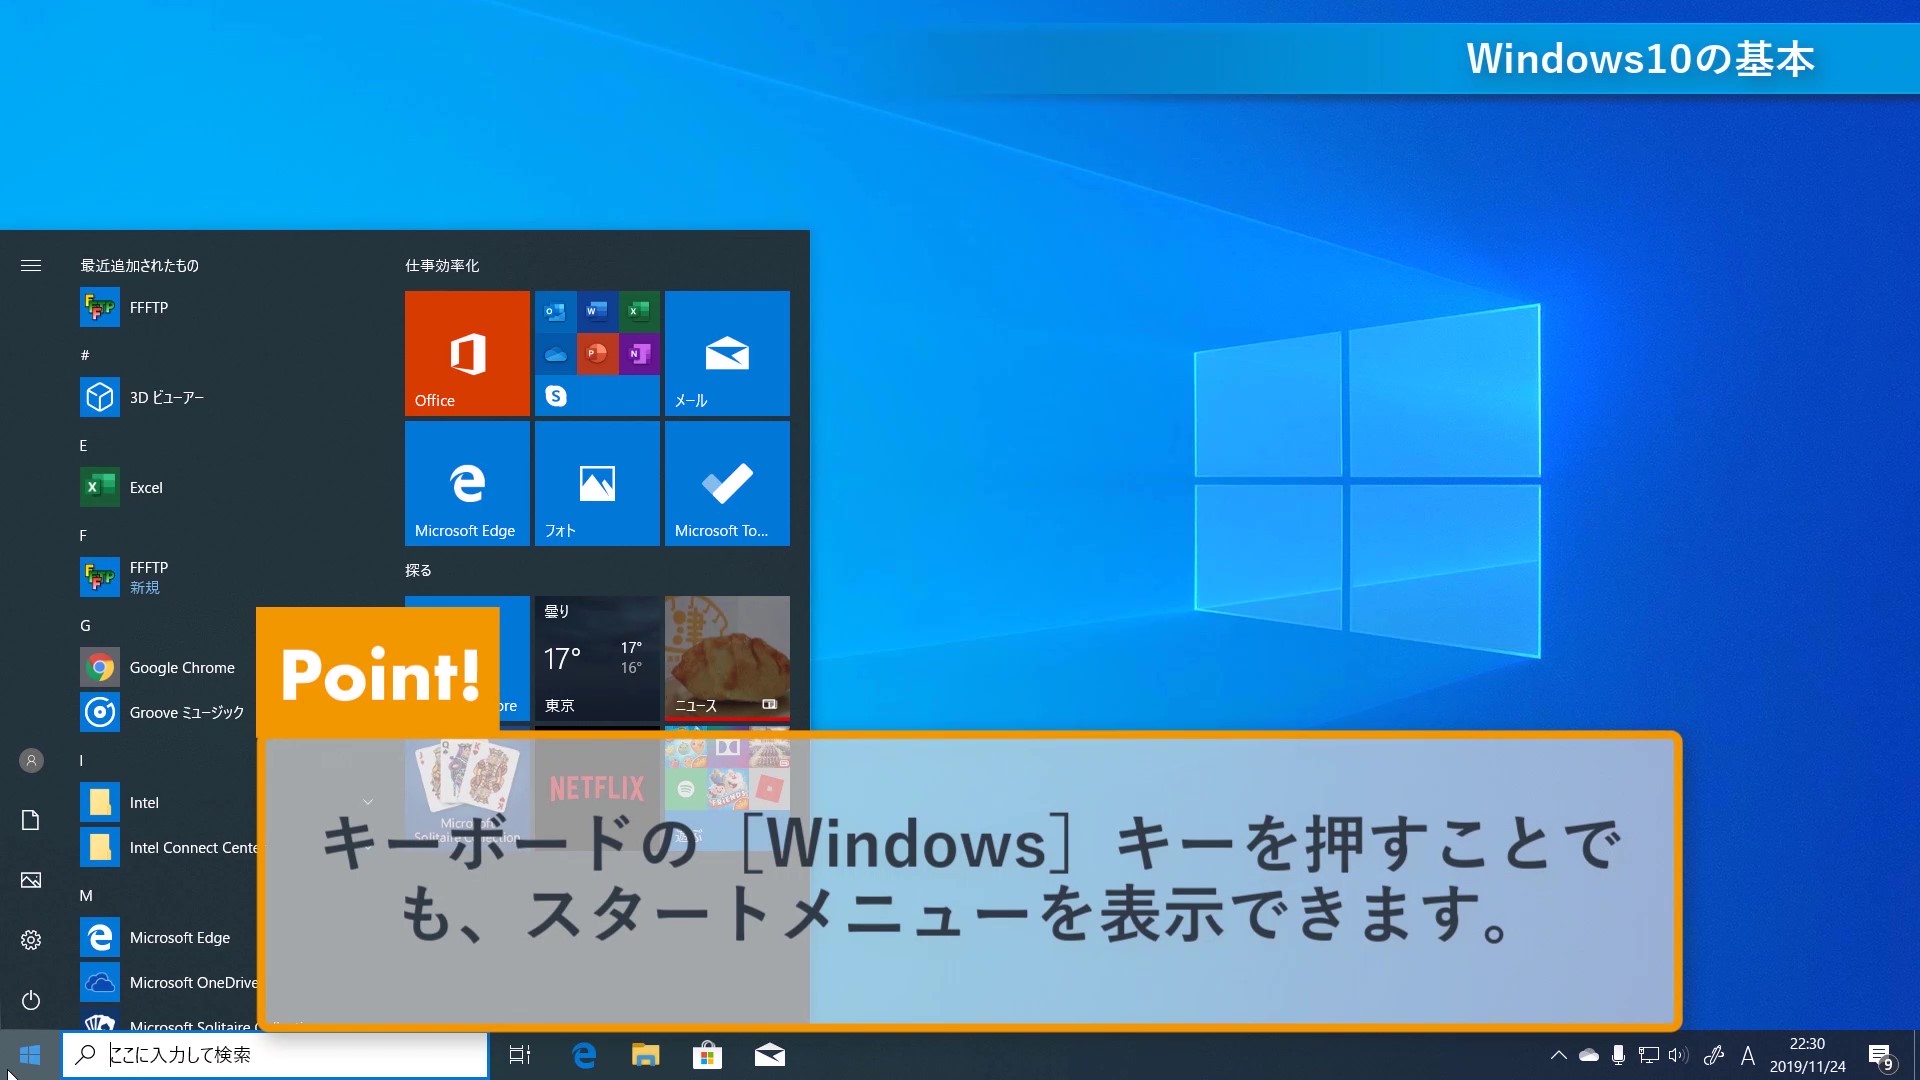 Windows 7からwindows 10へ らくに乗り換える方法を動画で解説 インプレスカレッジ のeラーニングコンテンツが1月末まで割引価格 Internet Watch